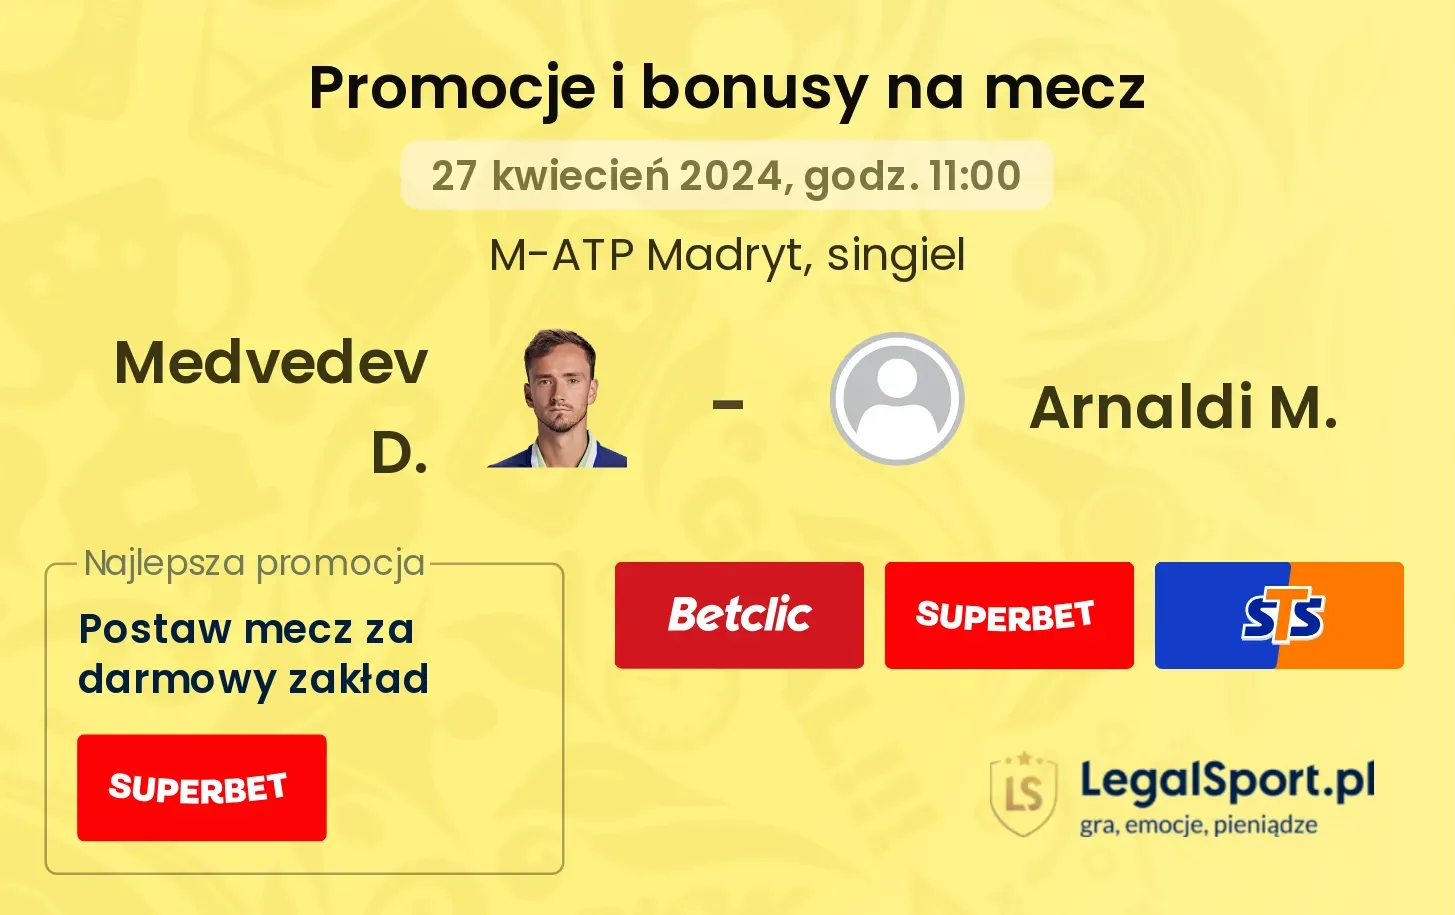 Medvedev D. - Arnaldi M. promocje bonusy na mecz